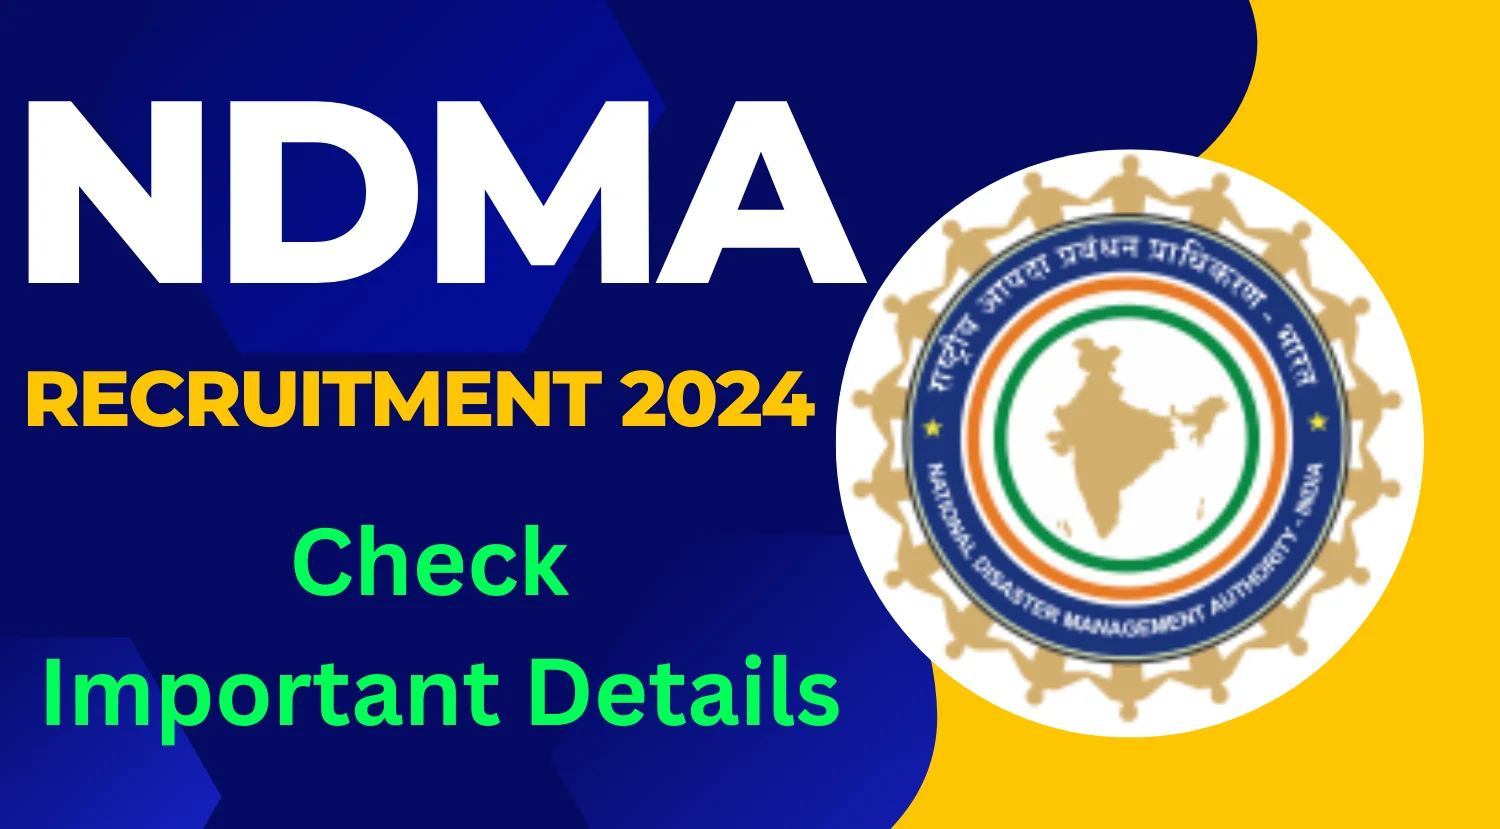 NDMA Recruitment 2024